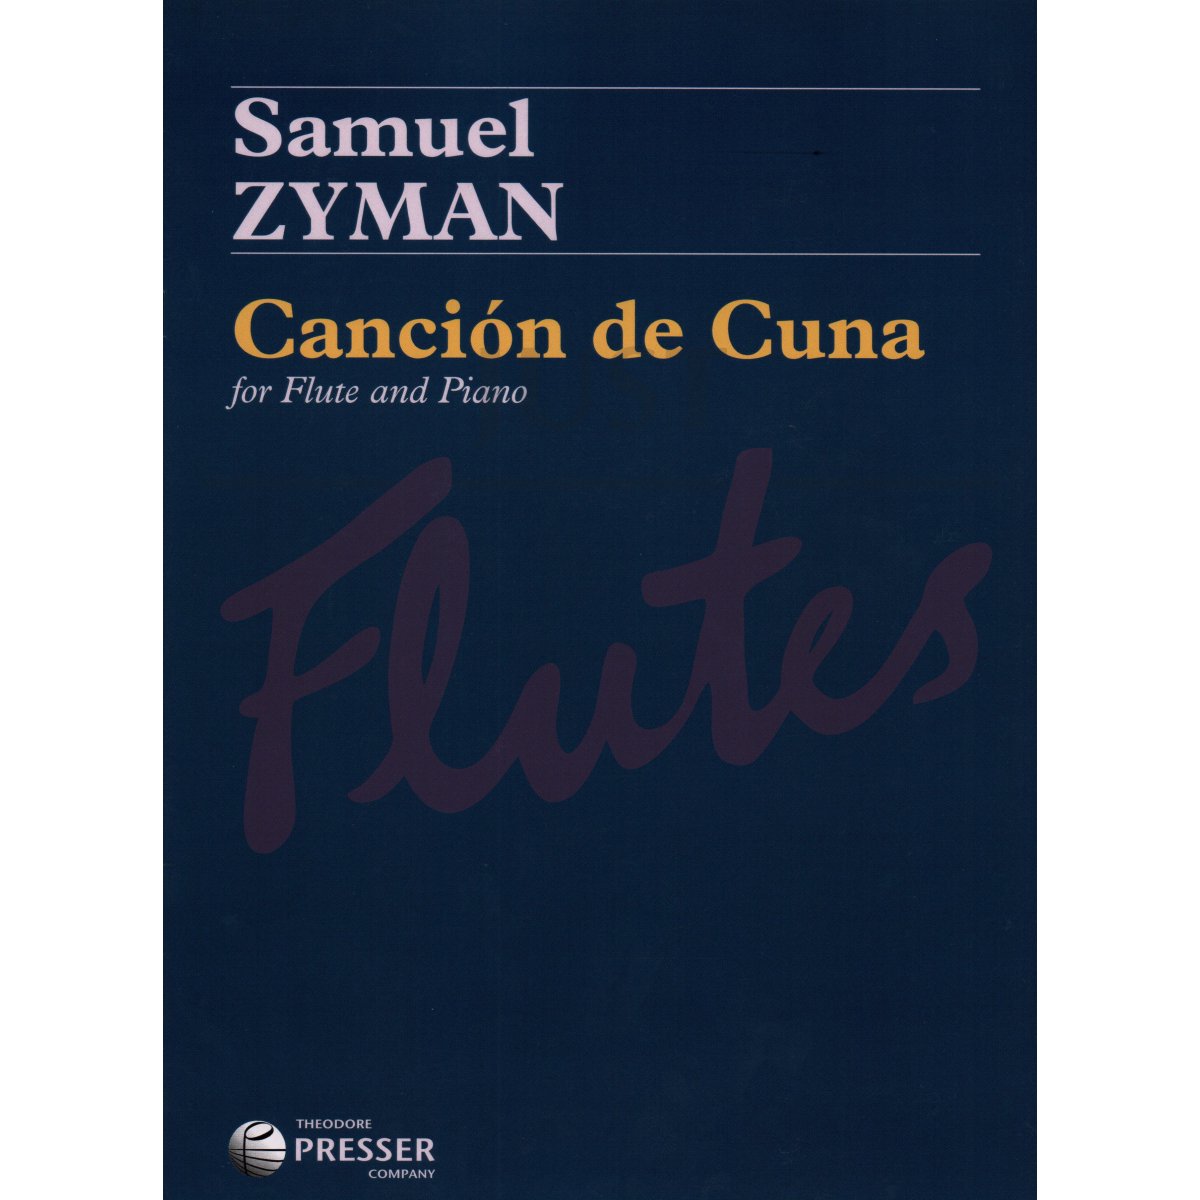 Canción de Cuna for Flute and Piano